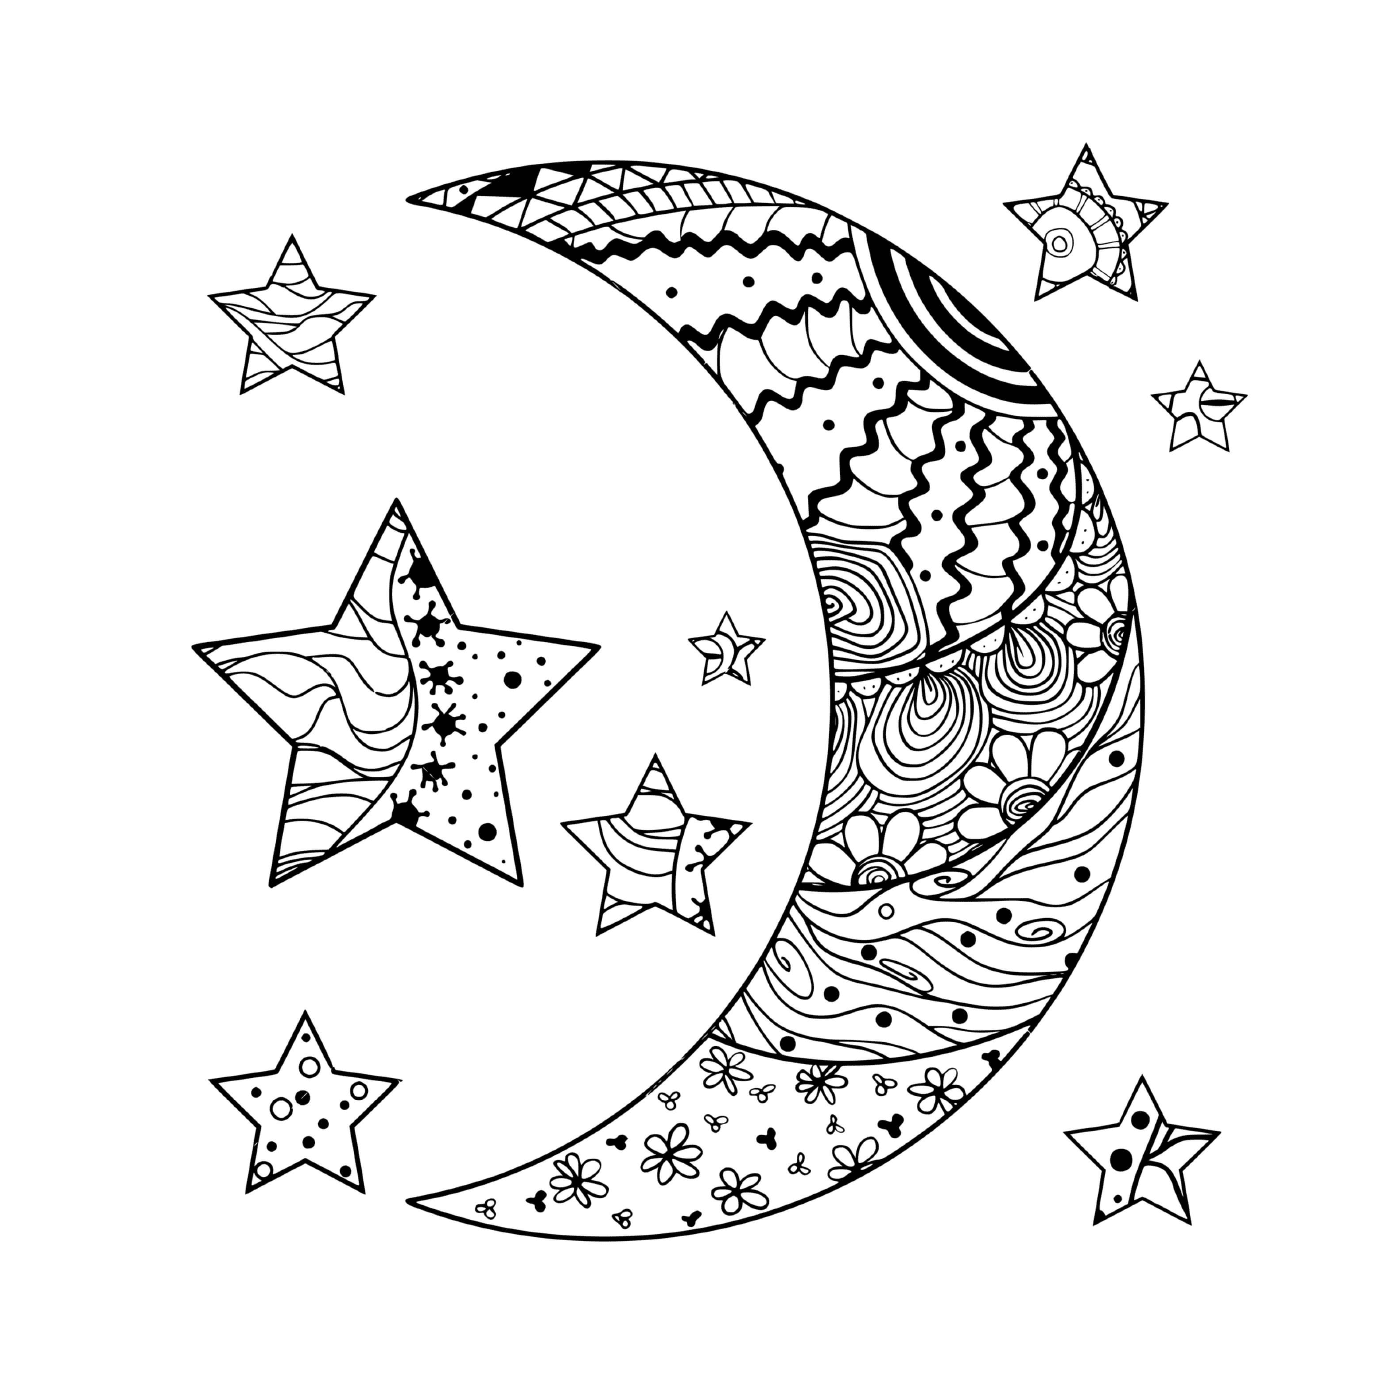   Croissant de lune et étoiles avec motifs abstraits 